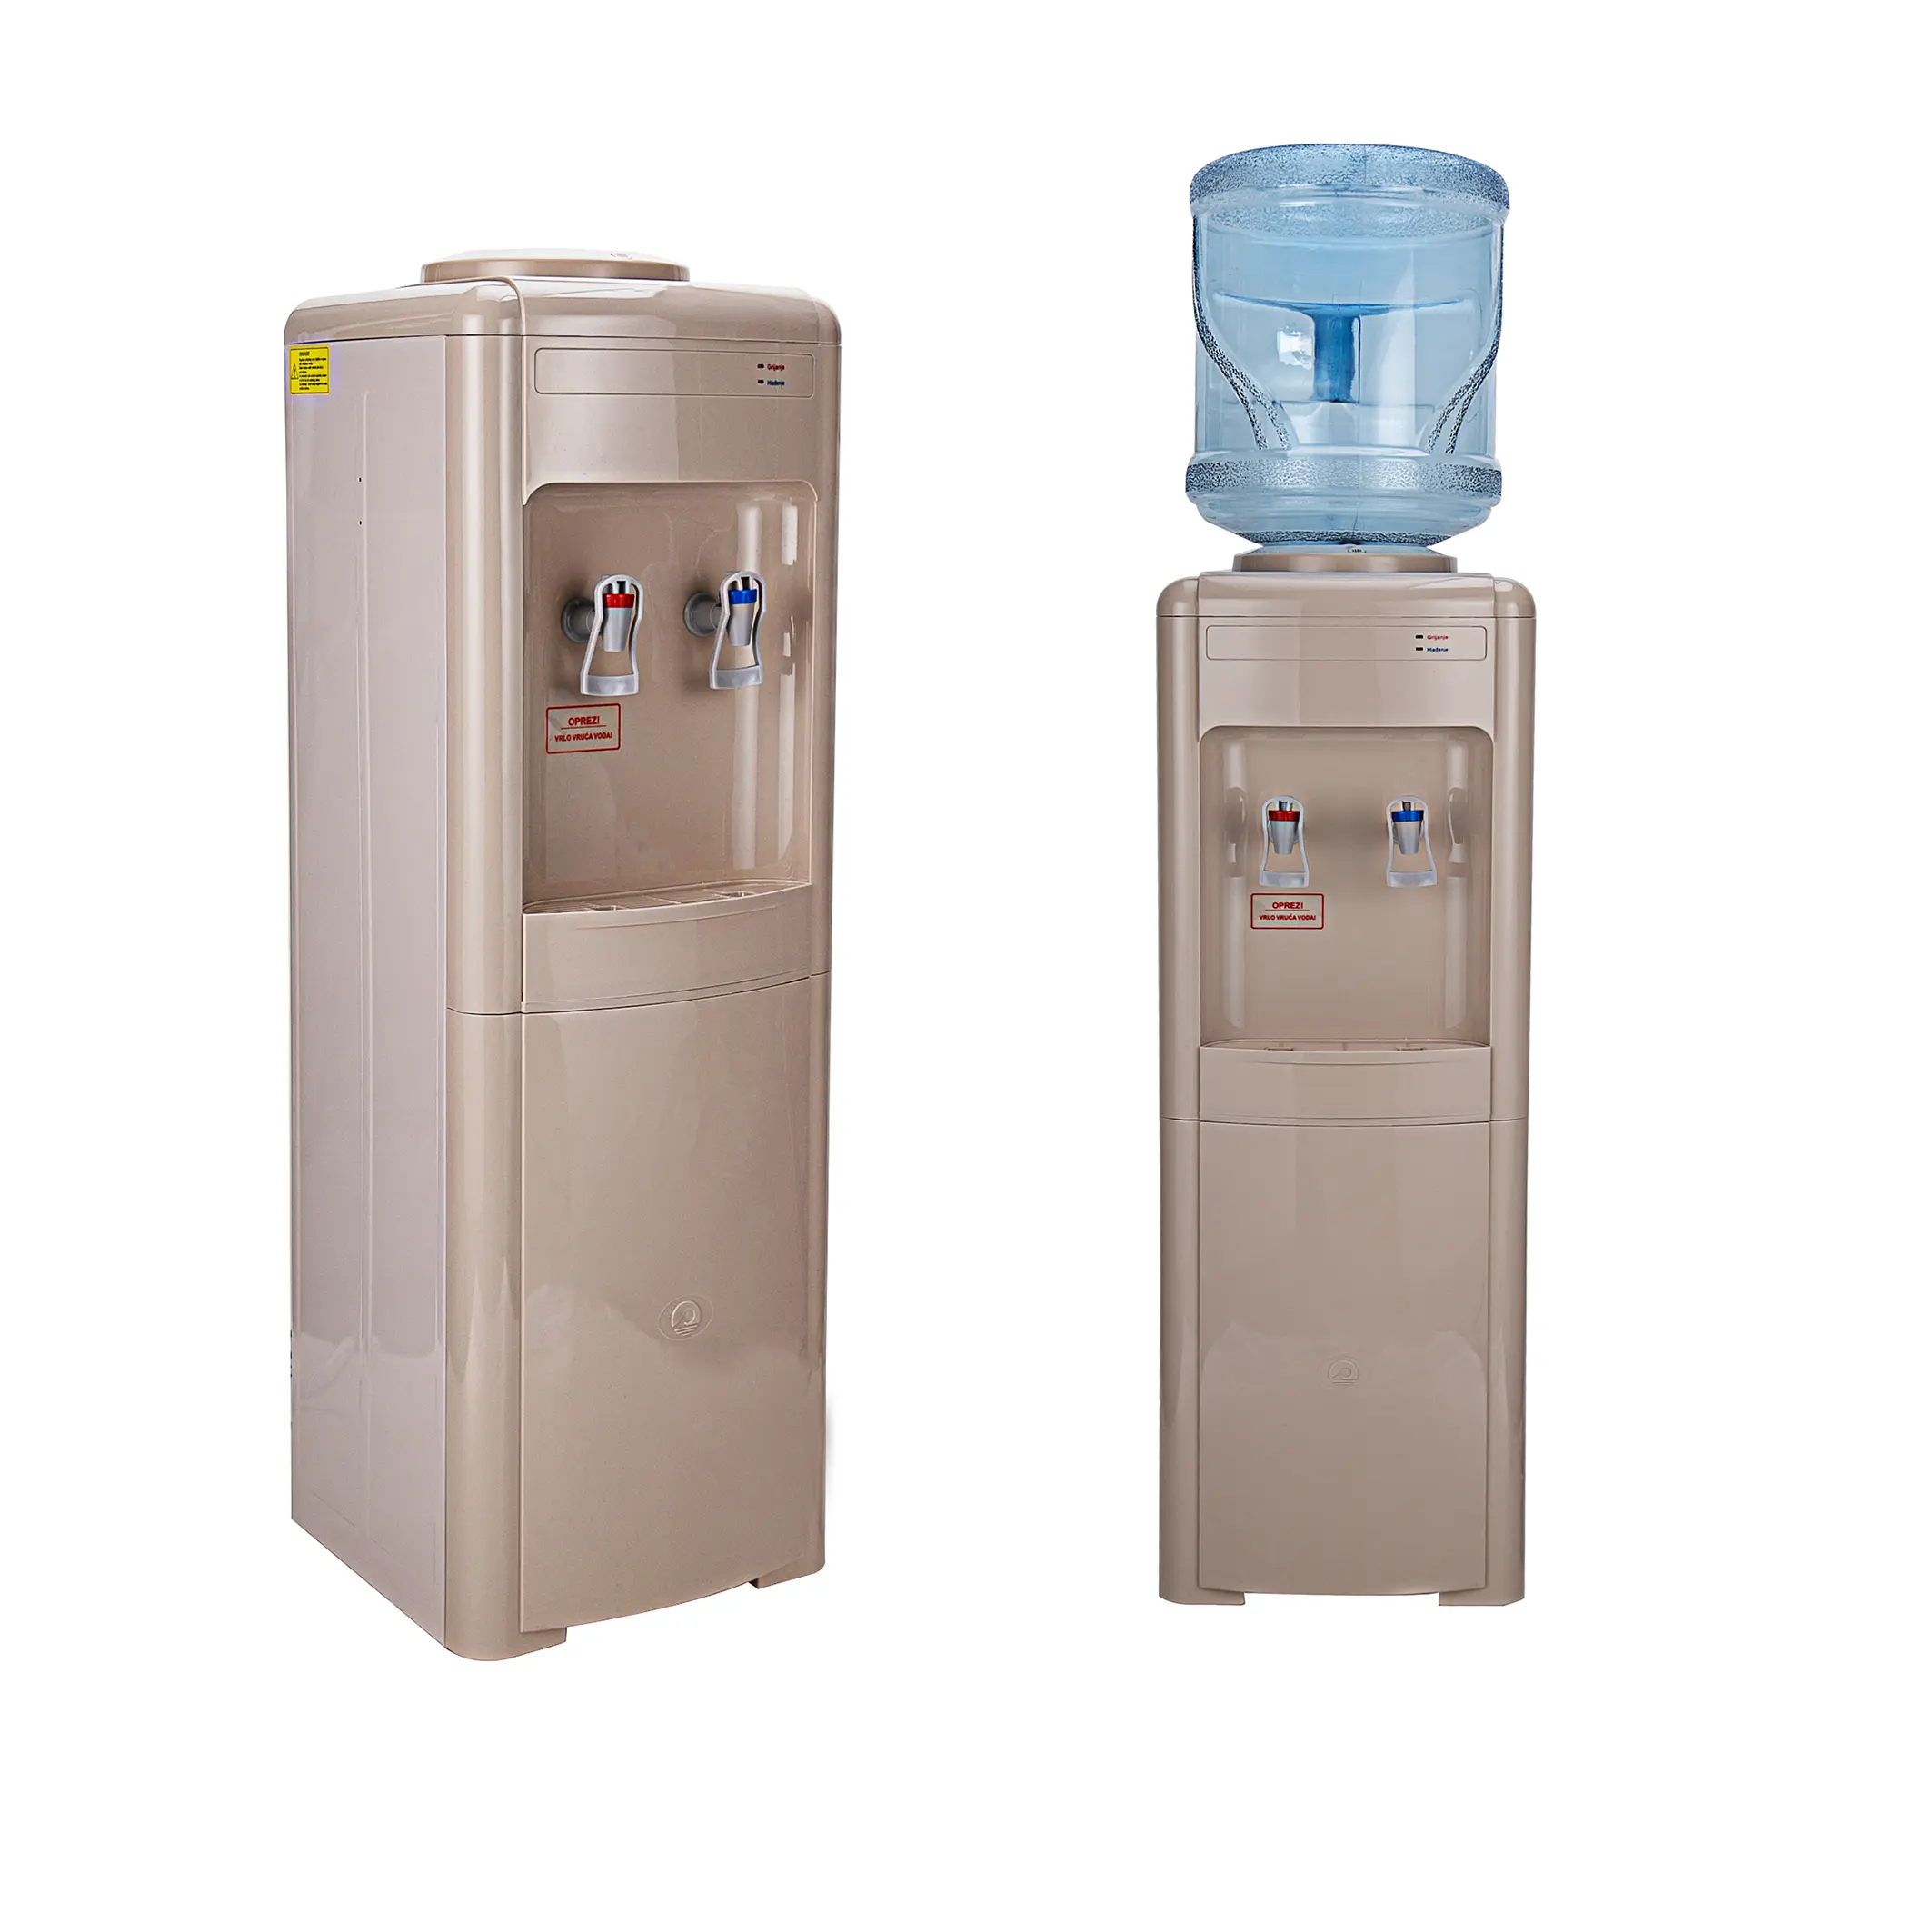 Sağlık içme suyu makinesi ofis ev kullanımı için temel Model su sebili